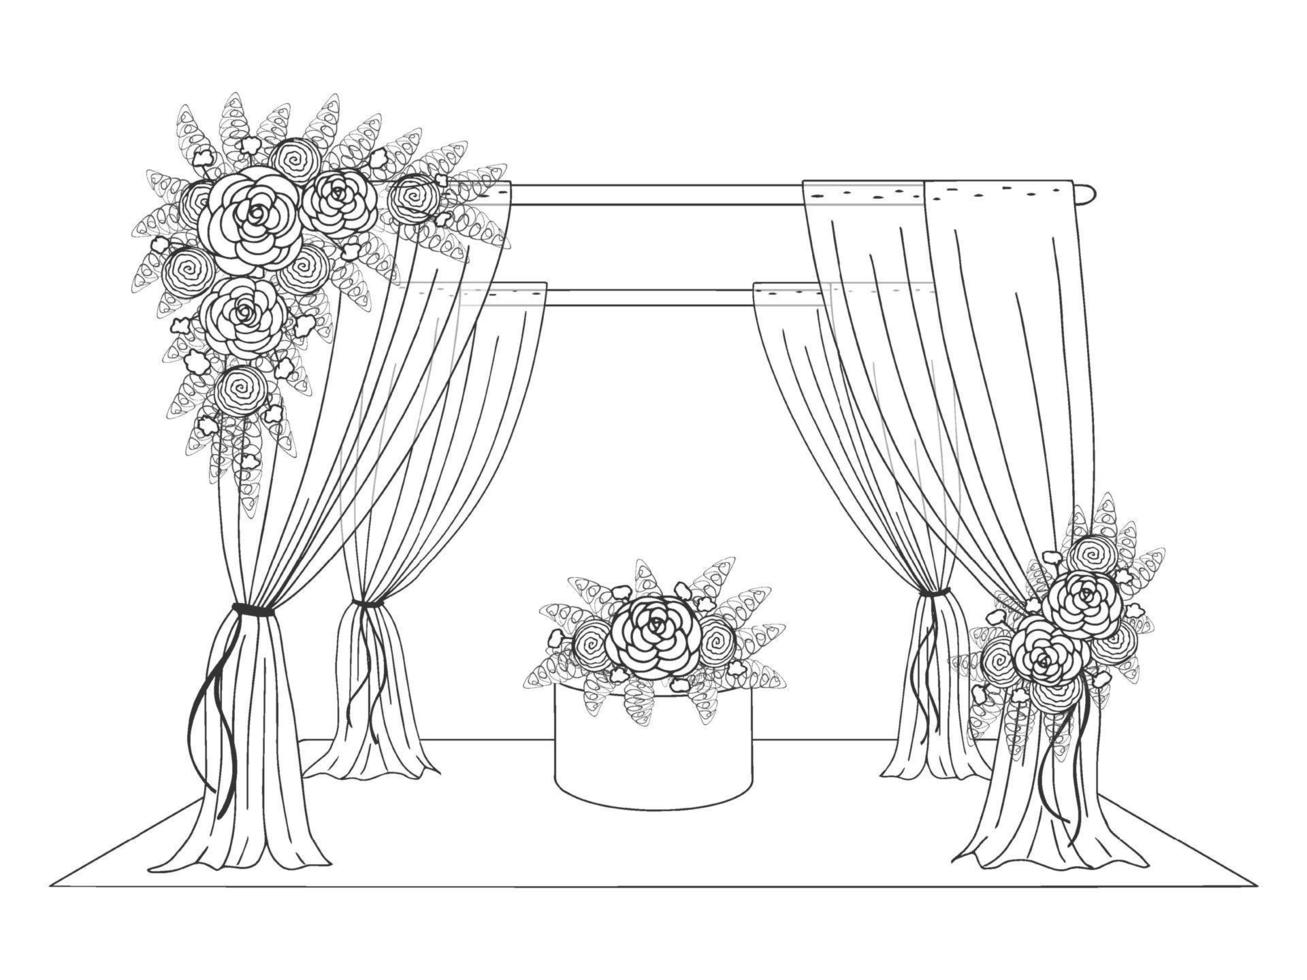 tenda nuziale decorata con fiori. immagine disegnata a mano. stile della linea grafica. illustrazione vettoriale. isolato su bianco. vettore